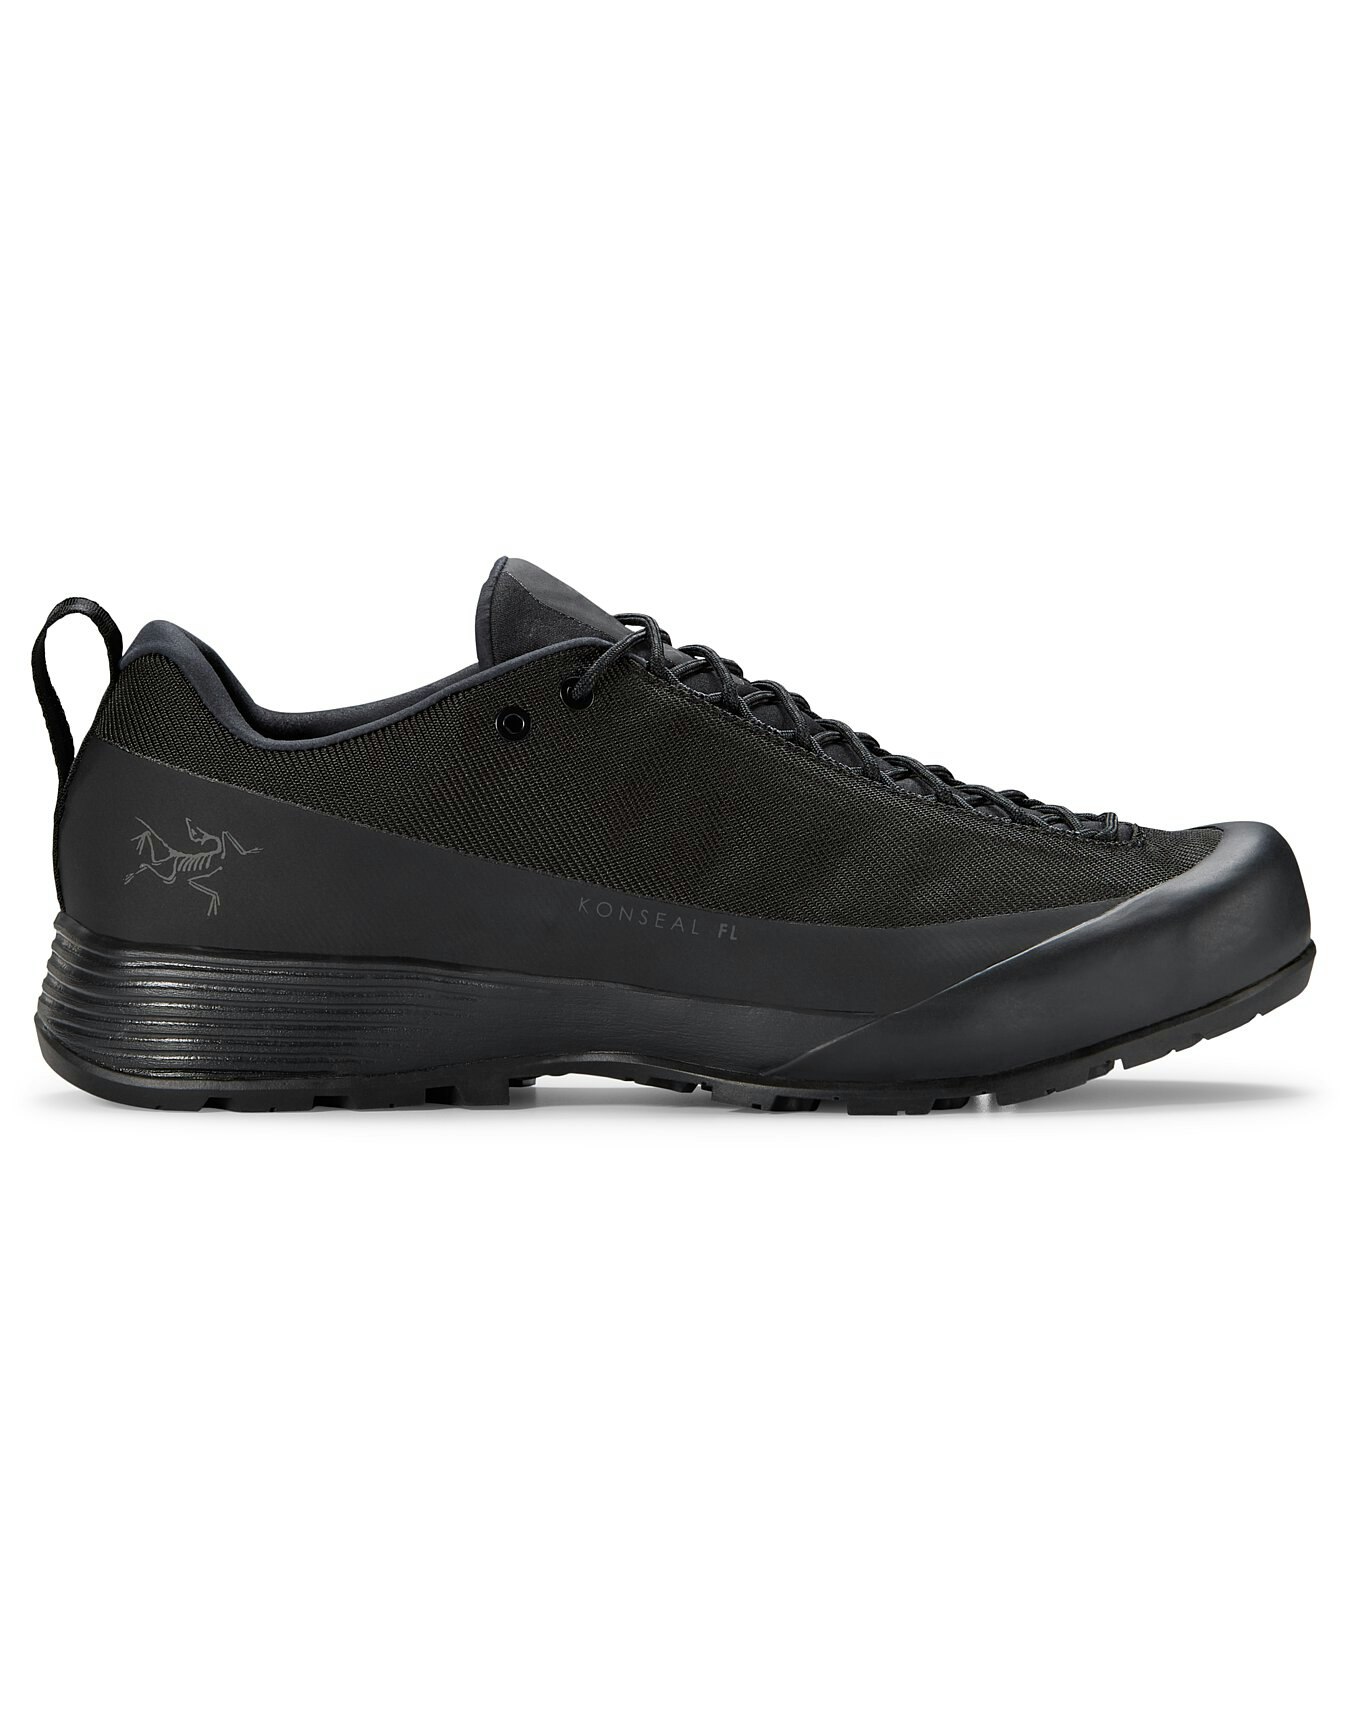 Konseal FL 2 Shoe Black/Carbon Copy